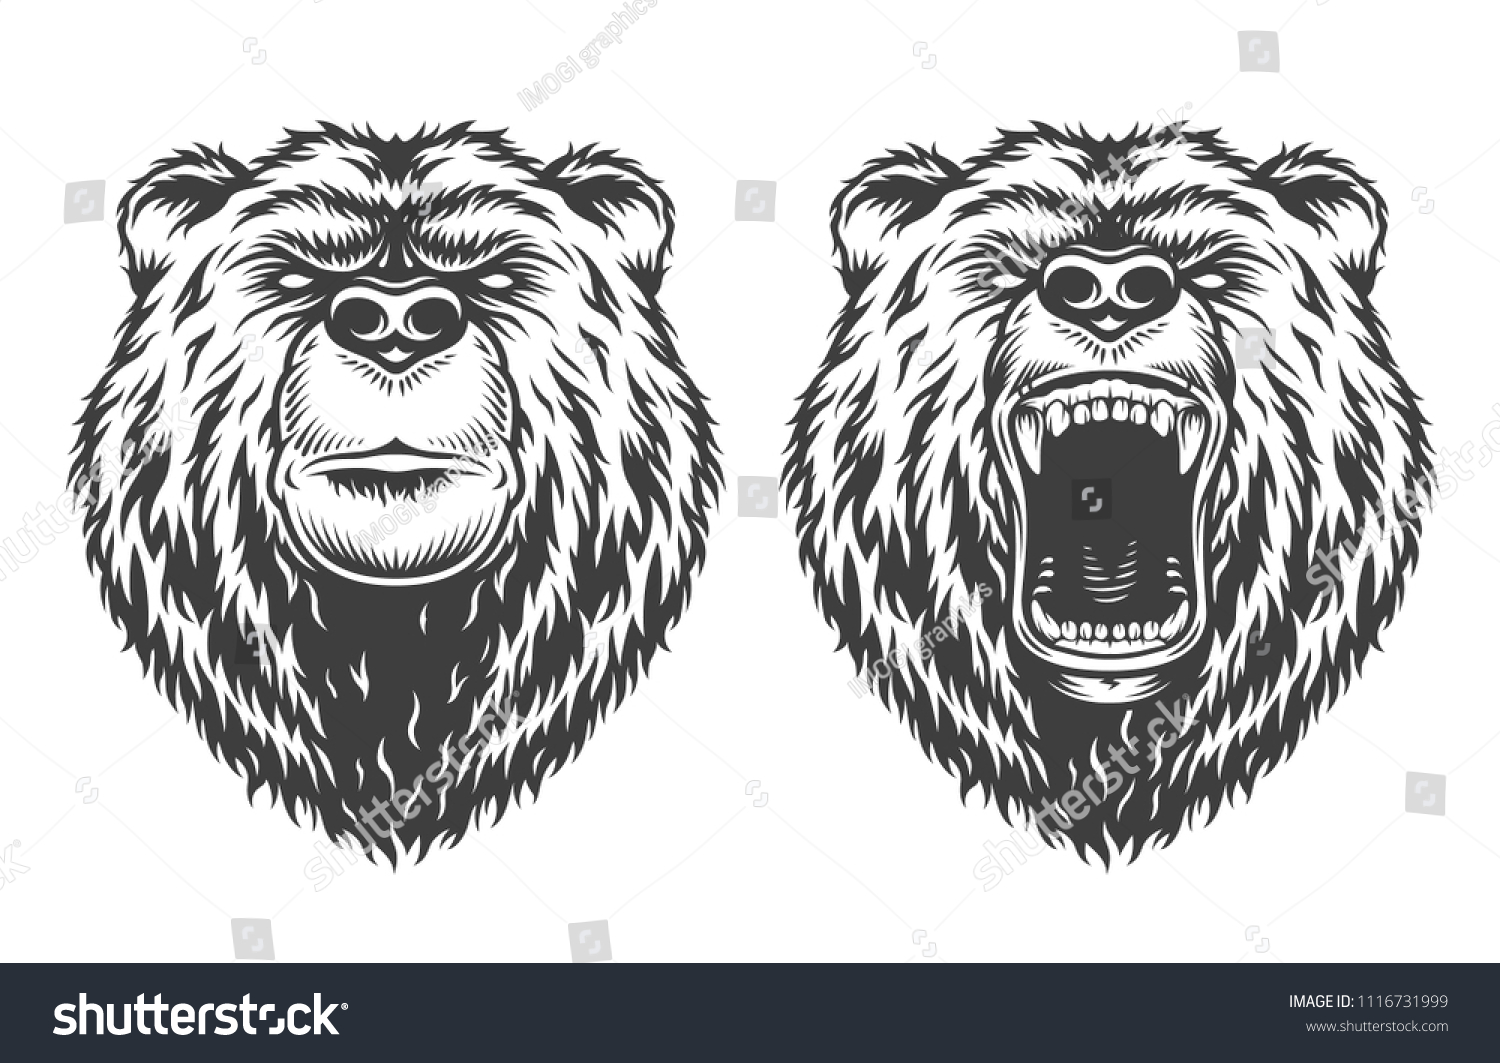 Логотипы в стиле медведей